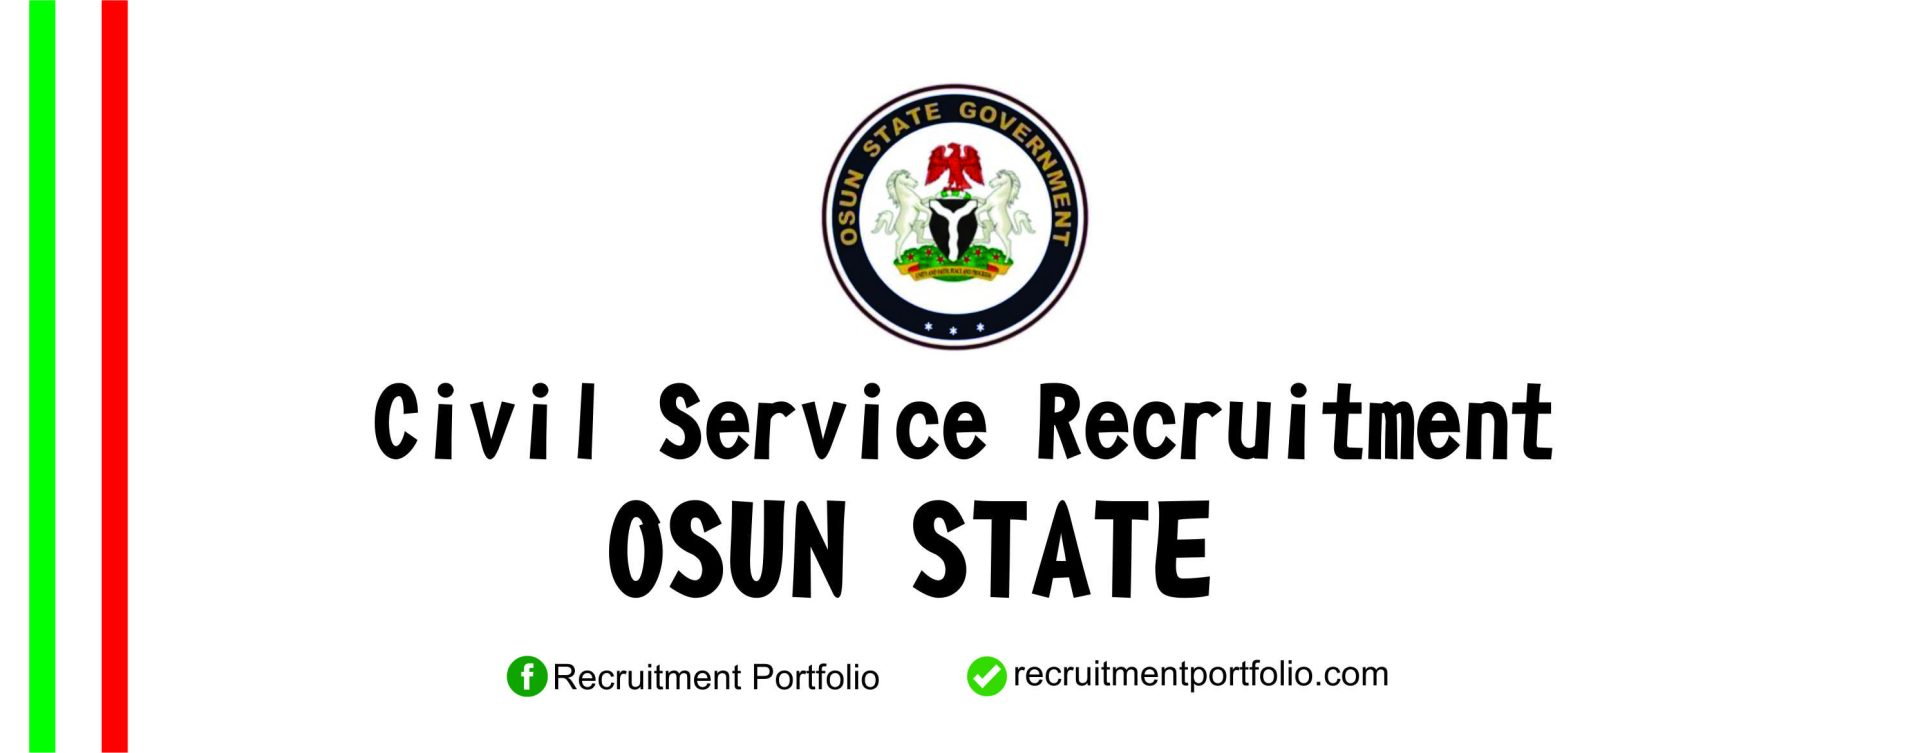 Osun State Civil Service recruitment